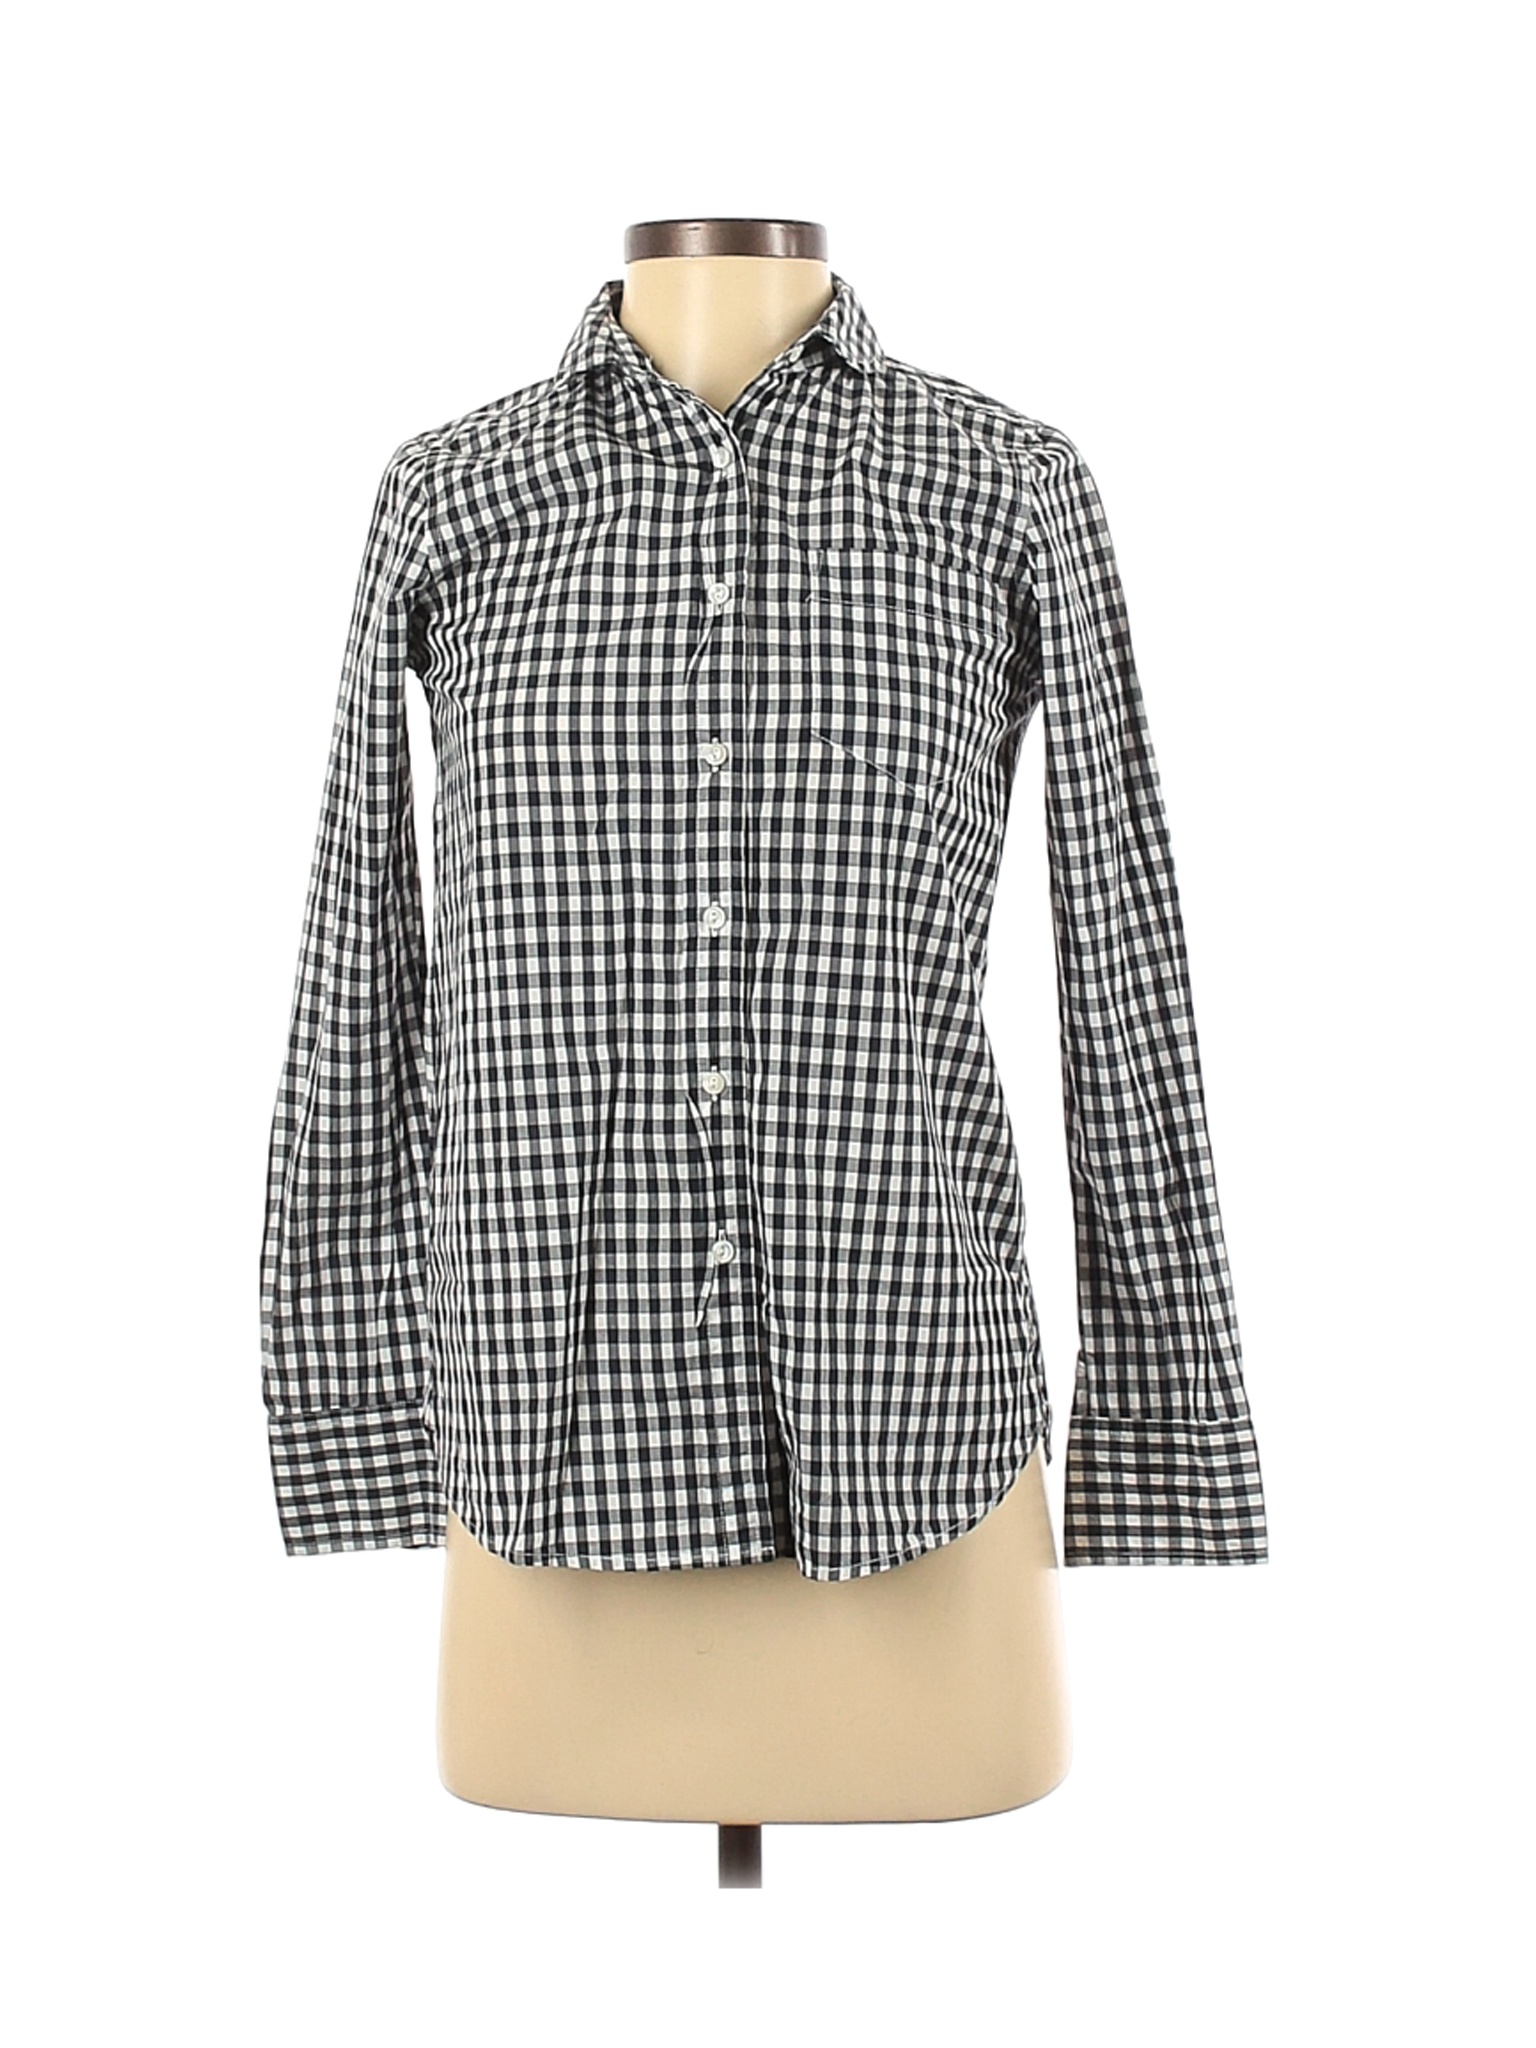 J.Crew Women Blue Long Sleeve Button-Down Shirt 00 | eBay